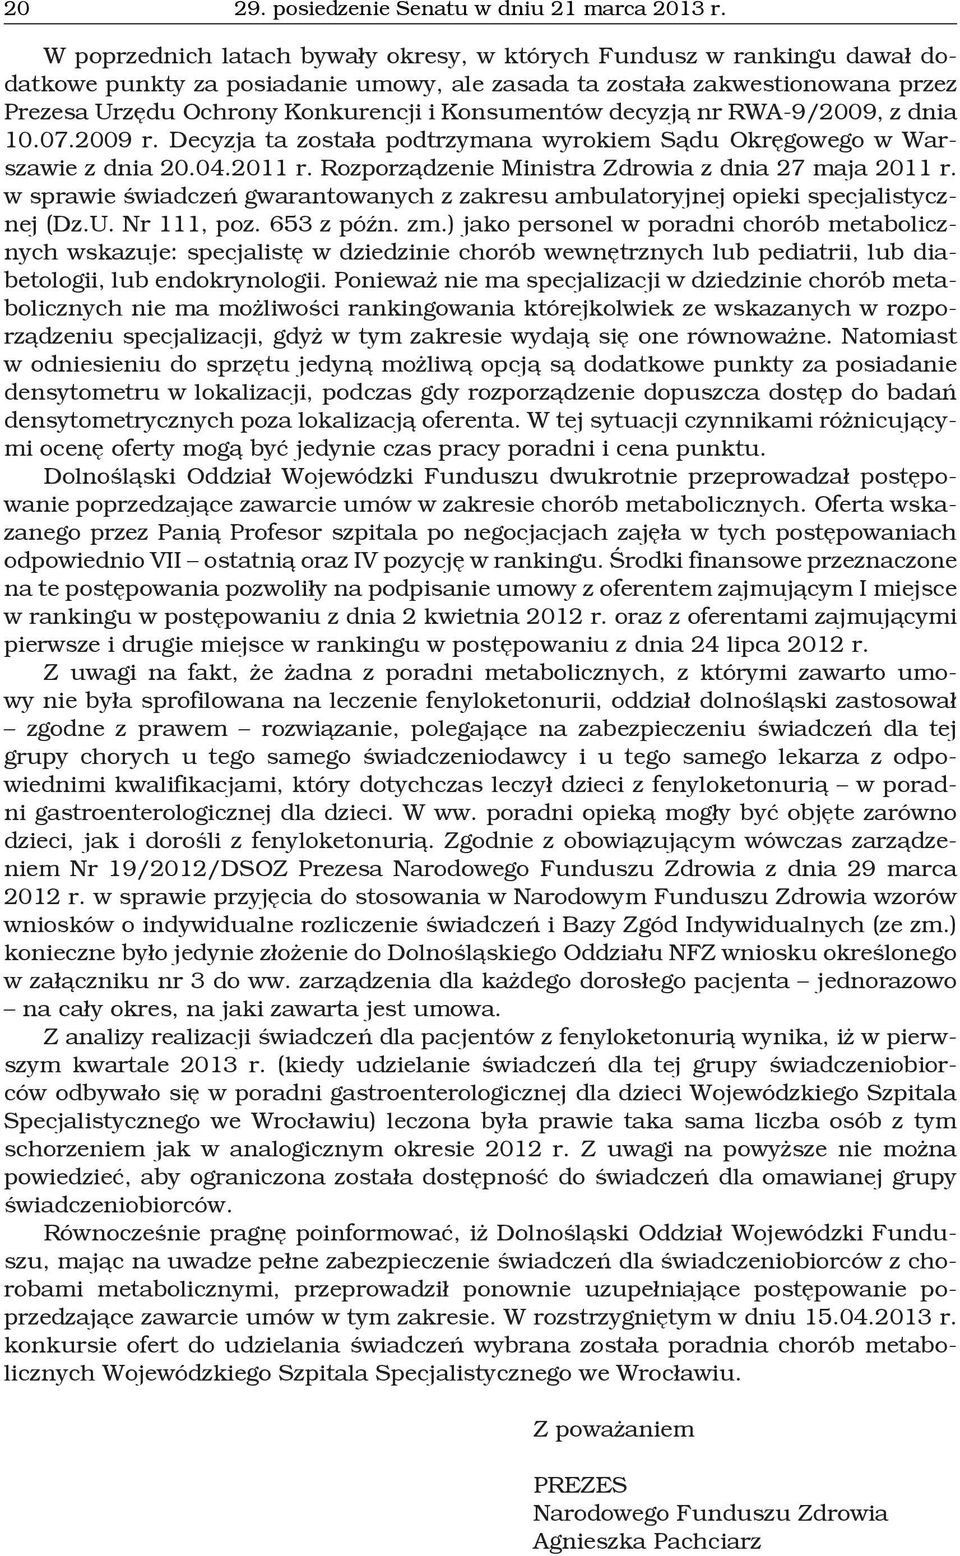 Konsumentów decyzją nr RWA-9/2009, z dnia 10.07.2009 r. Decyzja ta została podtrzymana wyrokiem Sądu Okręgowego w Warszawie z dnia 20.04.2011 r. Rozporządzenie Ministra Zdrowia z dnia 27 maja 2011 r.